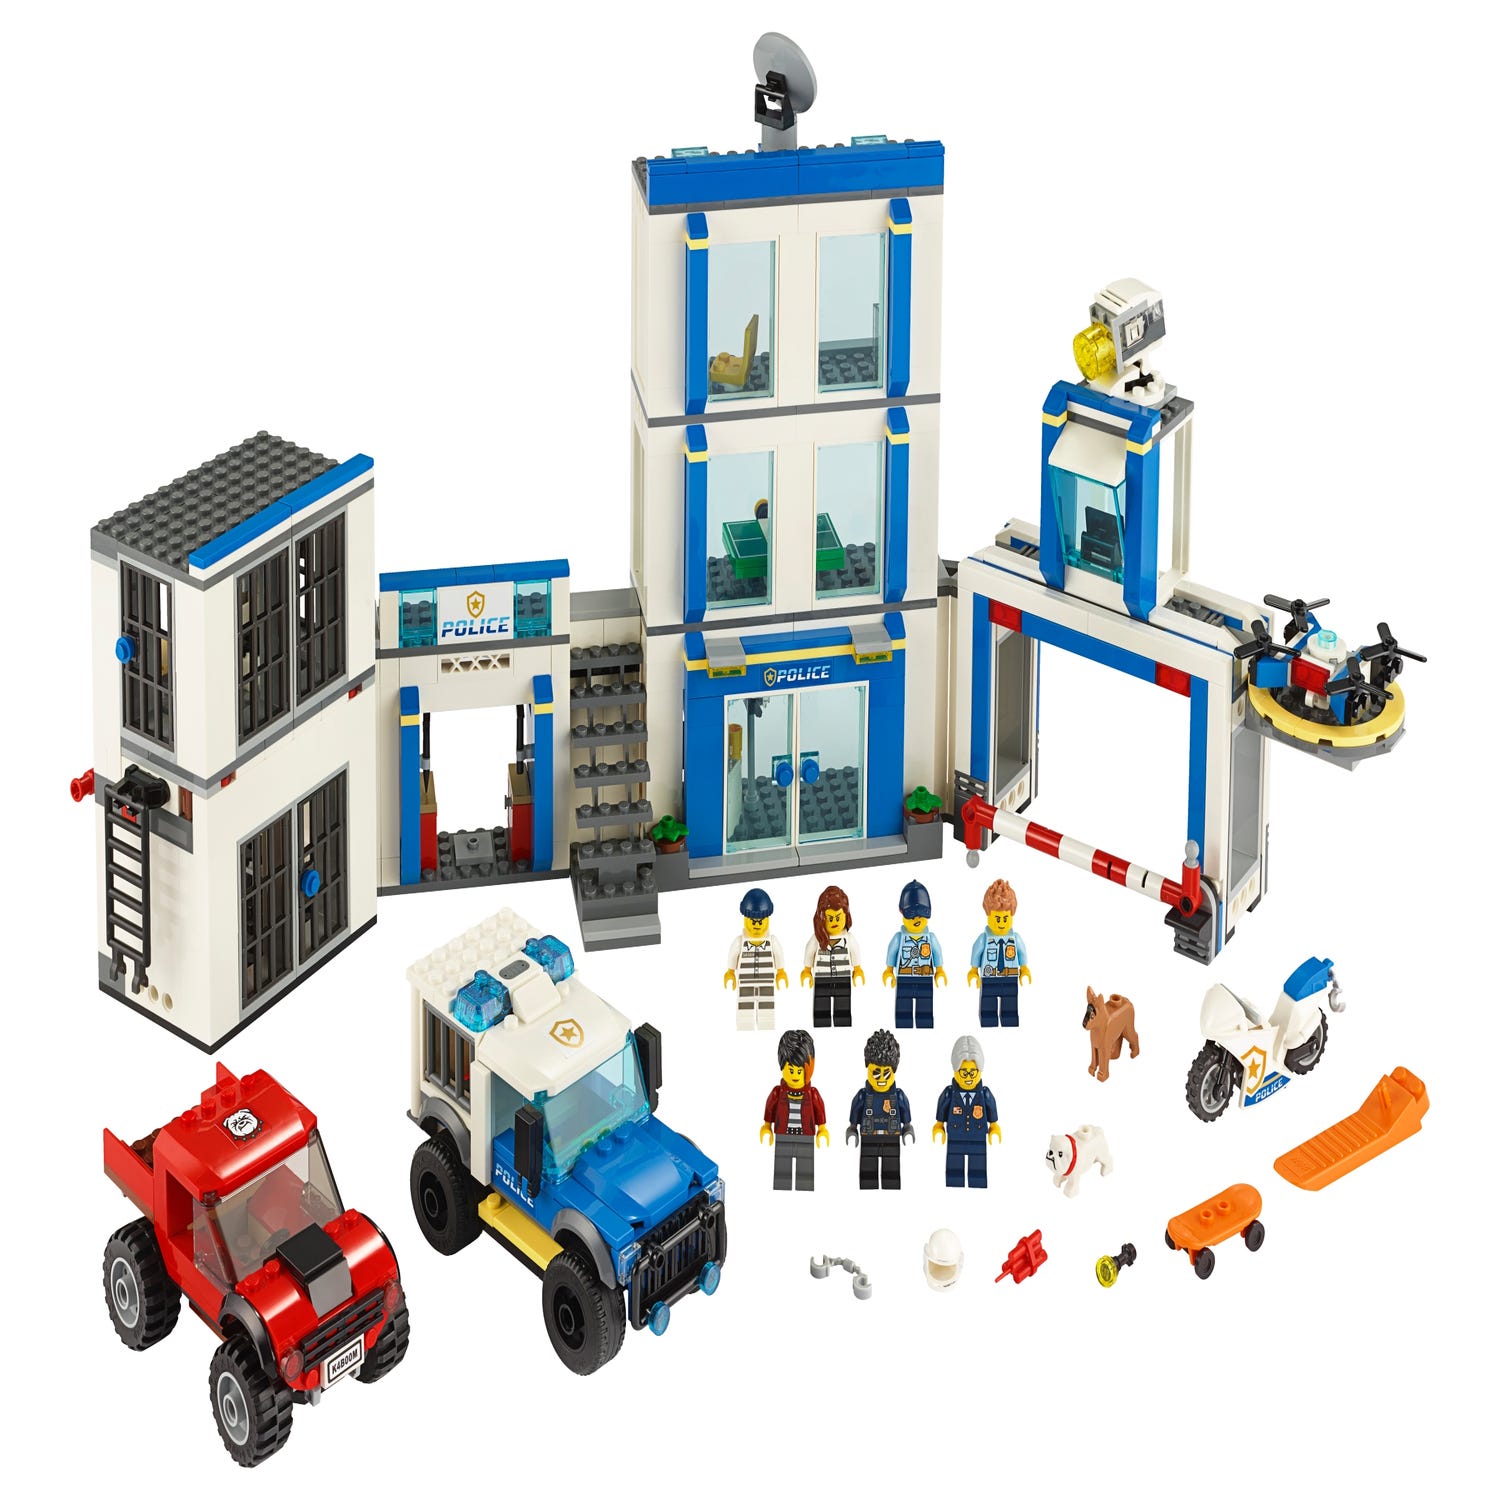 LEGO 乐高 城市系列 警察系列积木盒 60270 : 亚马逊中国: 玩具